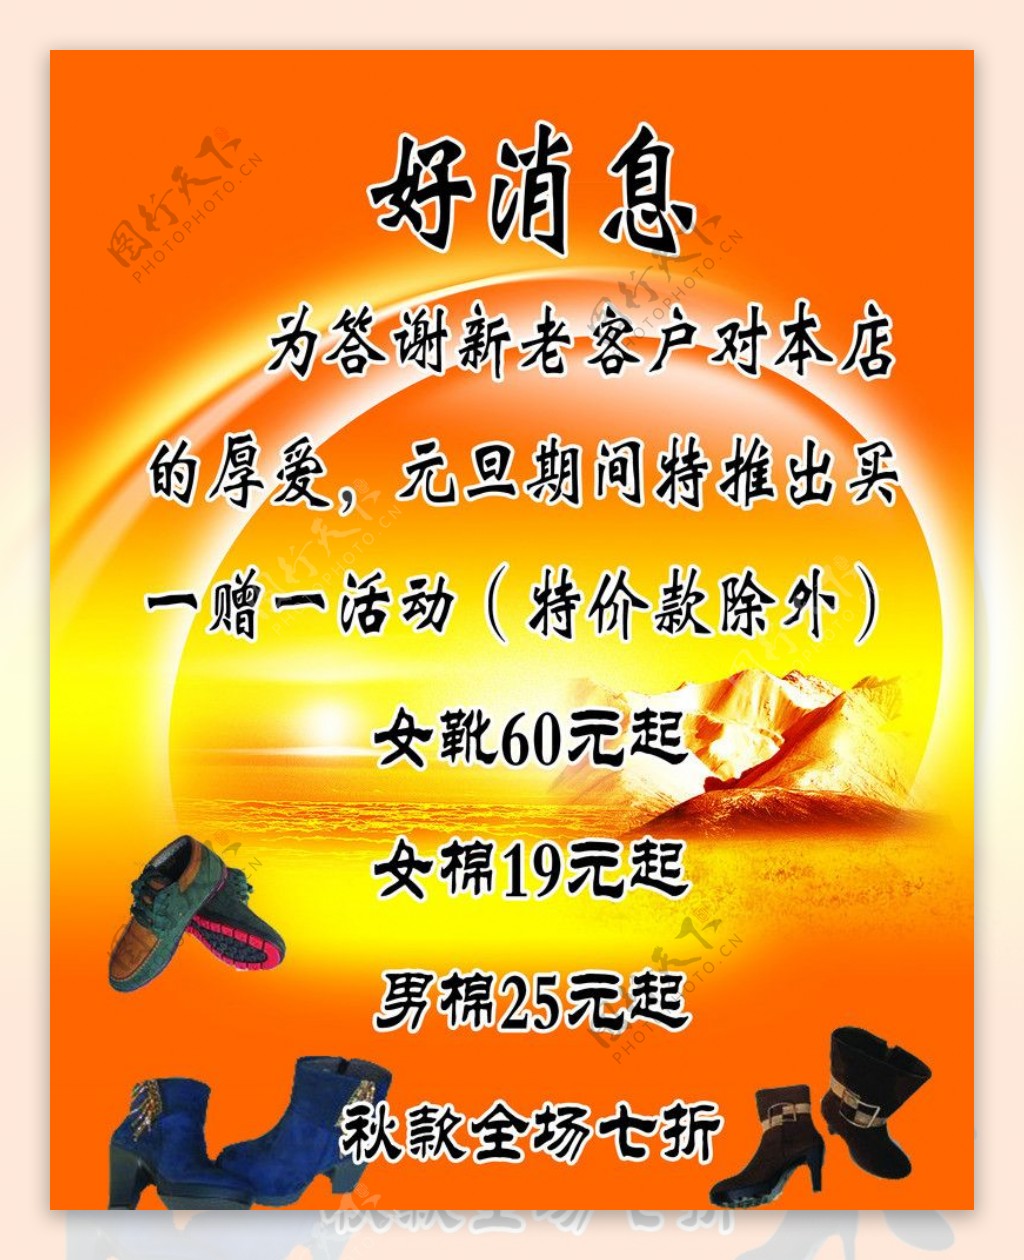 北京布鞋促销图片